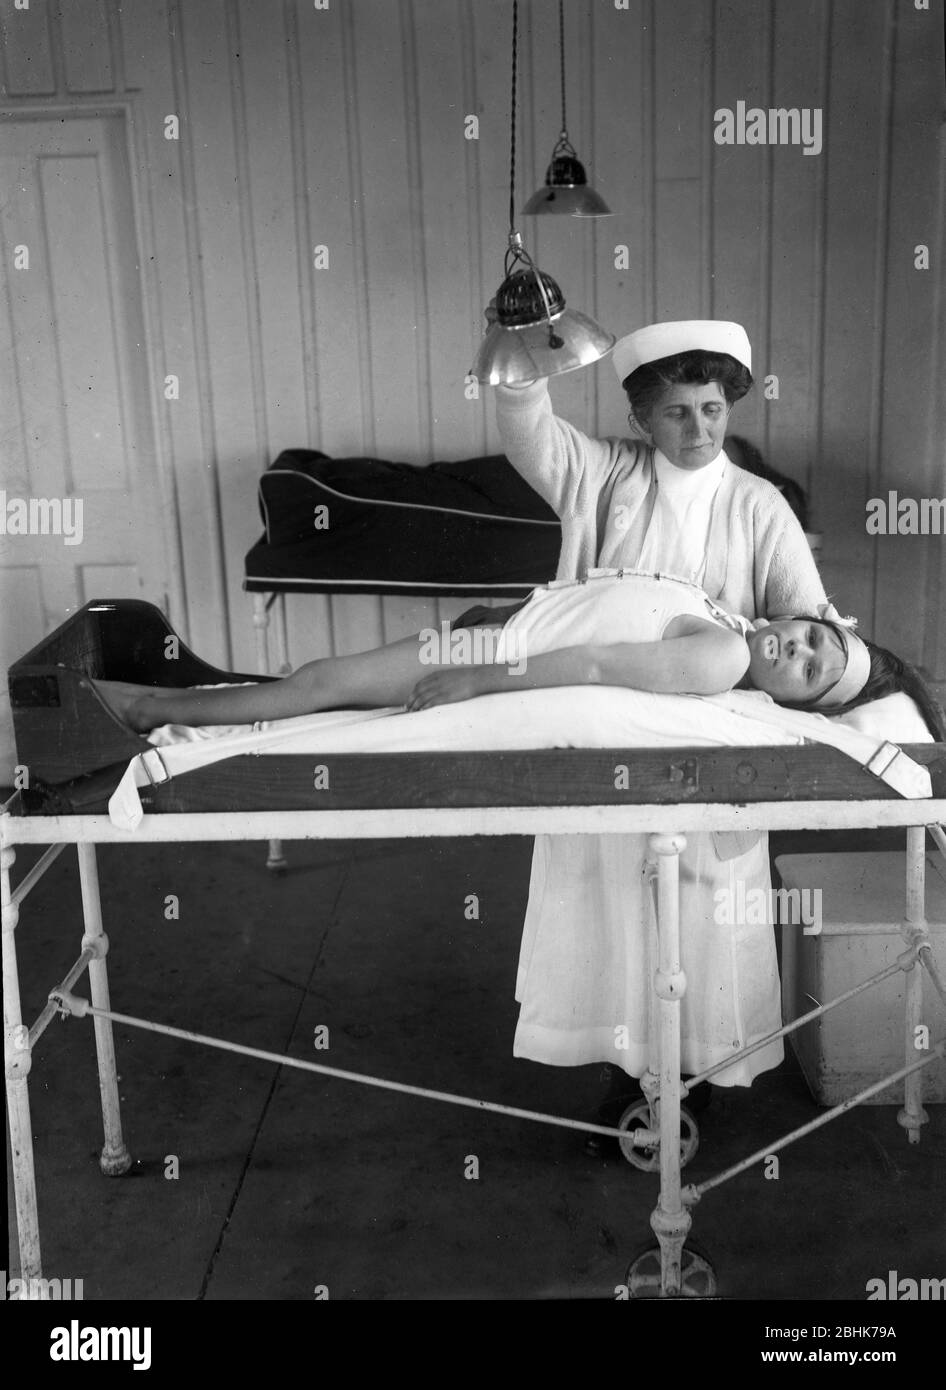 Kinder mit Rickets, die in einem Sanatorium in Hampshire England im Jahr 1925 Krankenschwester mit Kind behandelt werden. Behandlung Medikamente Gesundheit Unterernährung Poor Britain British care nursing1930er Lichttherapie Stockfoto